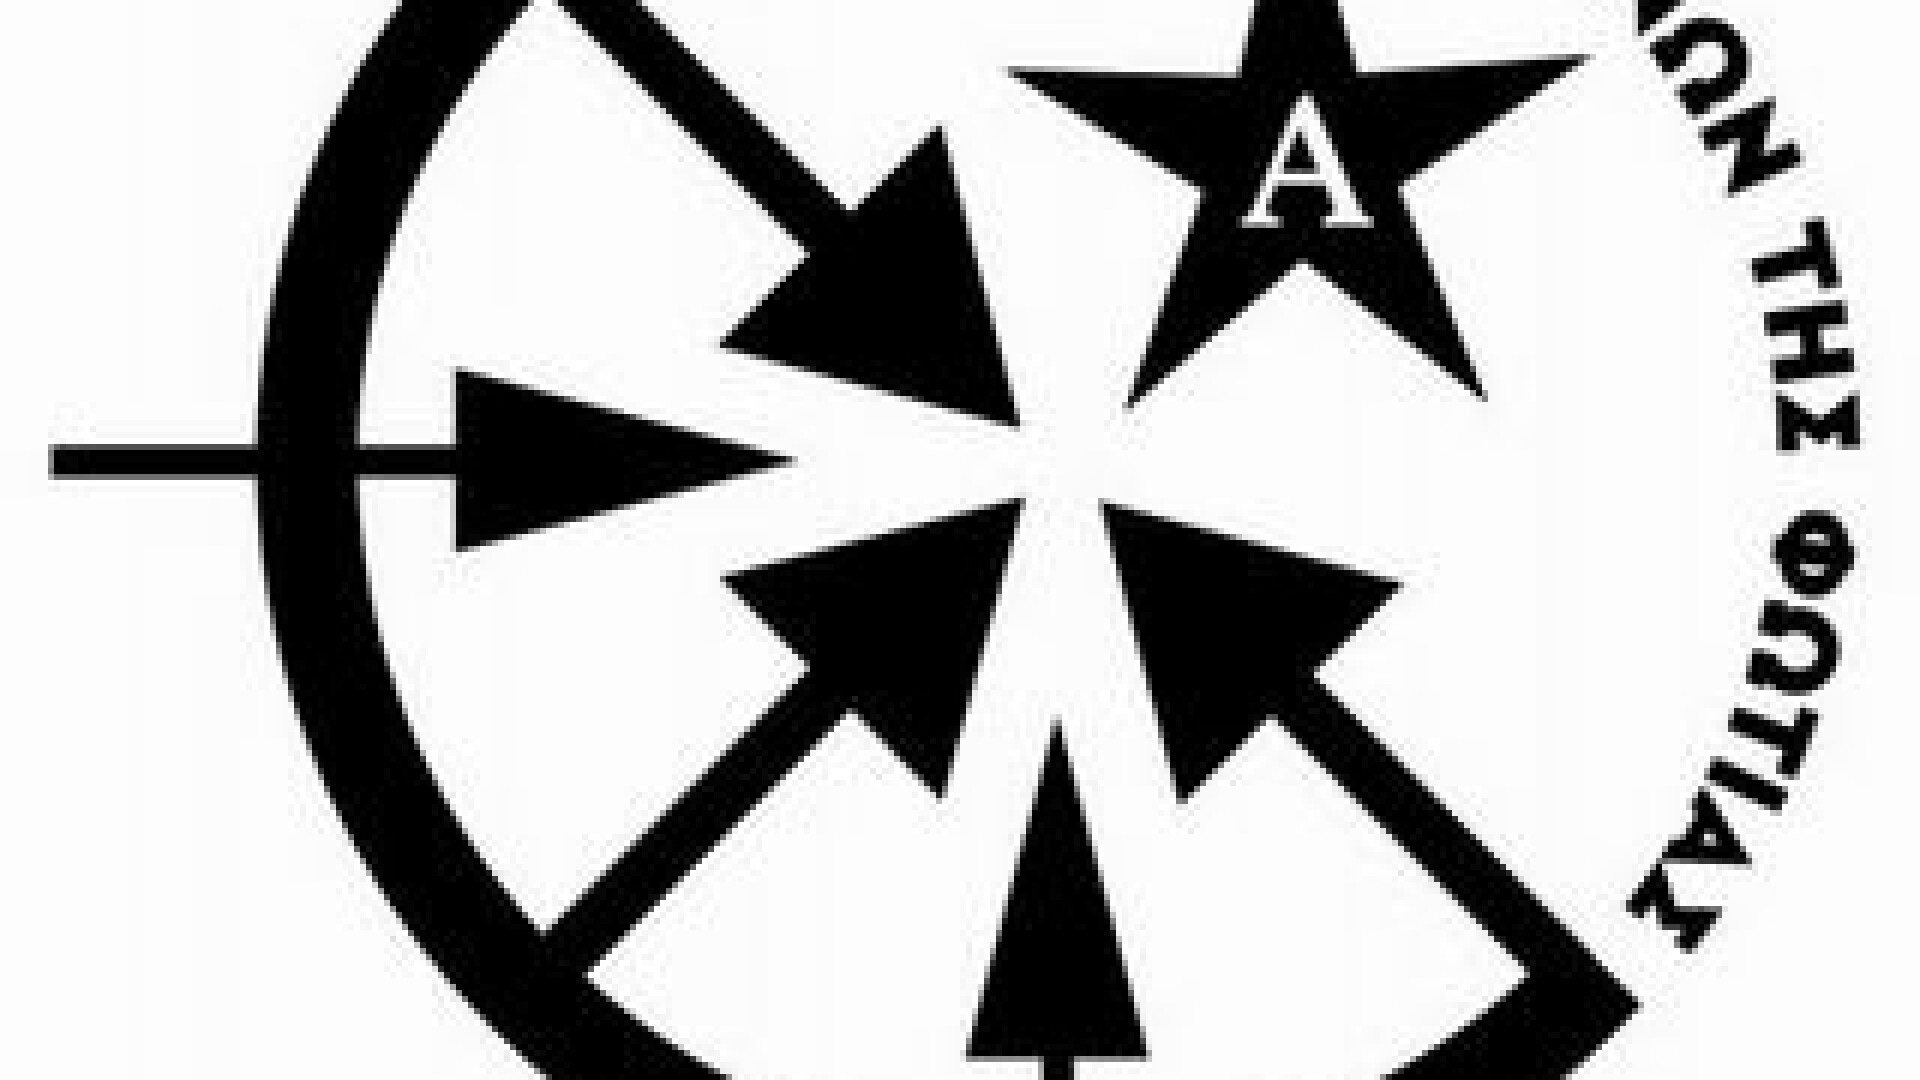 sigla grupare anarhista